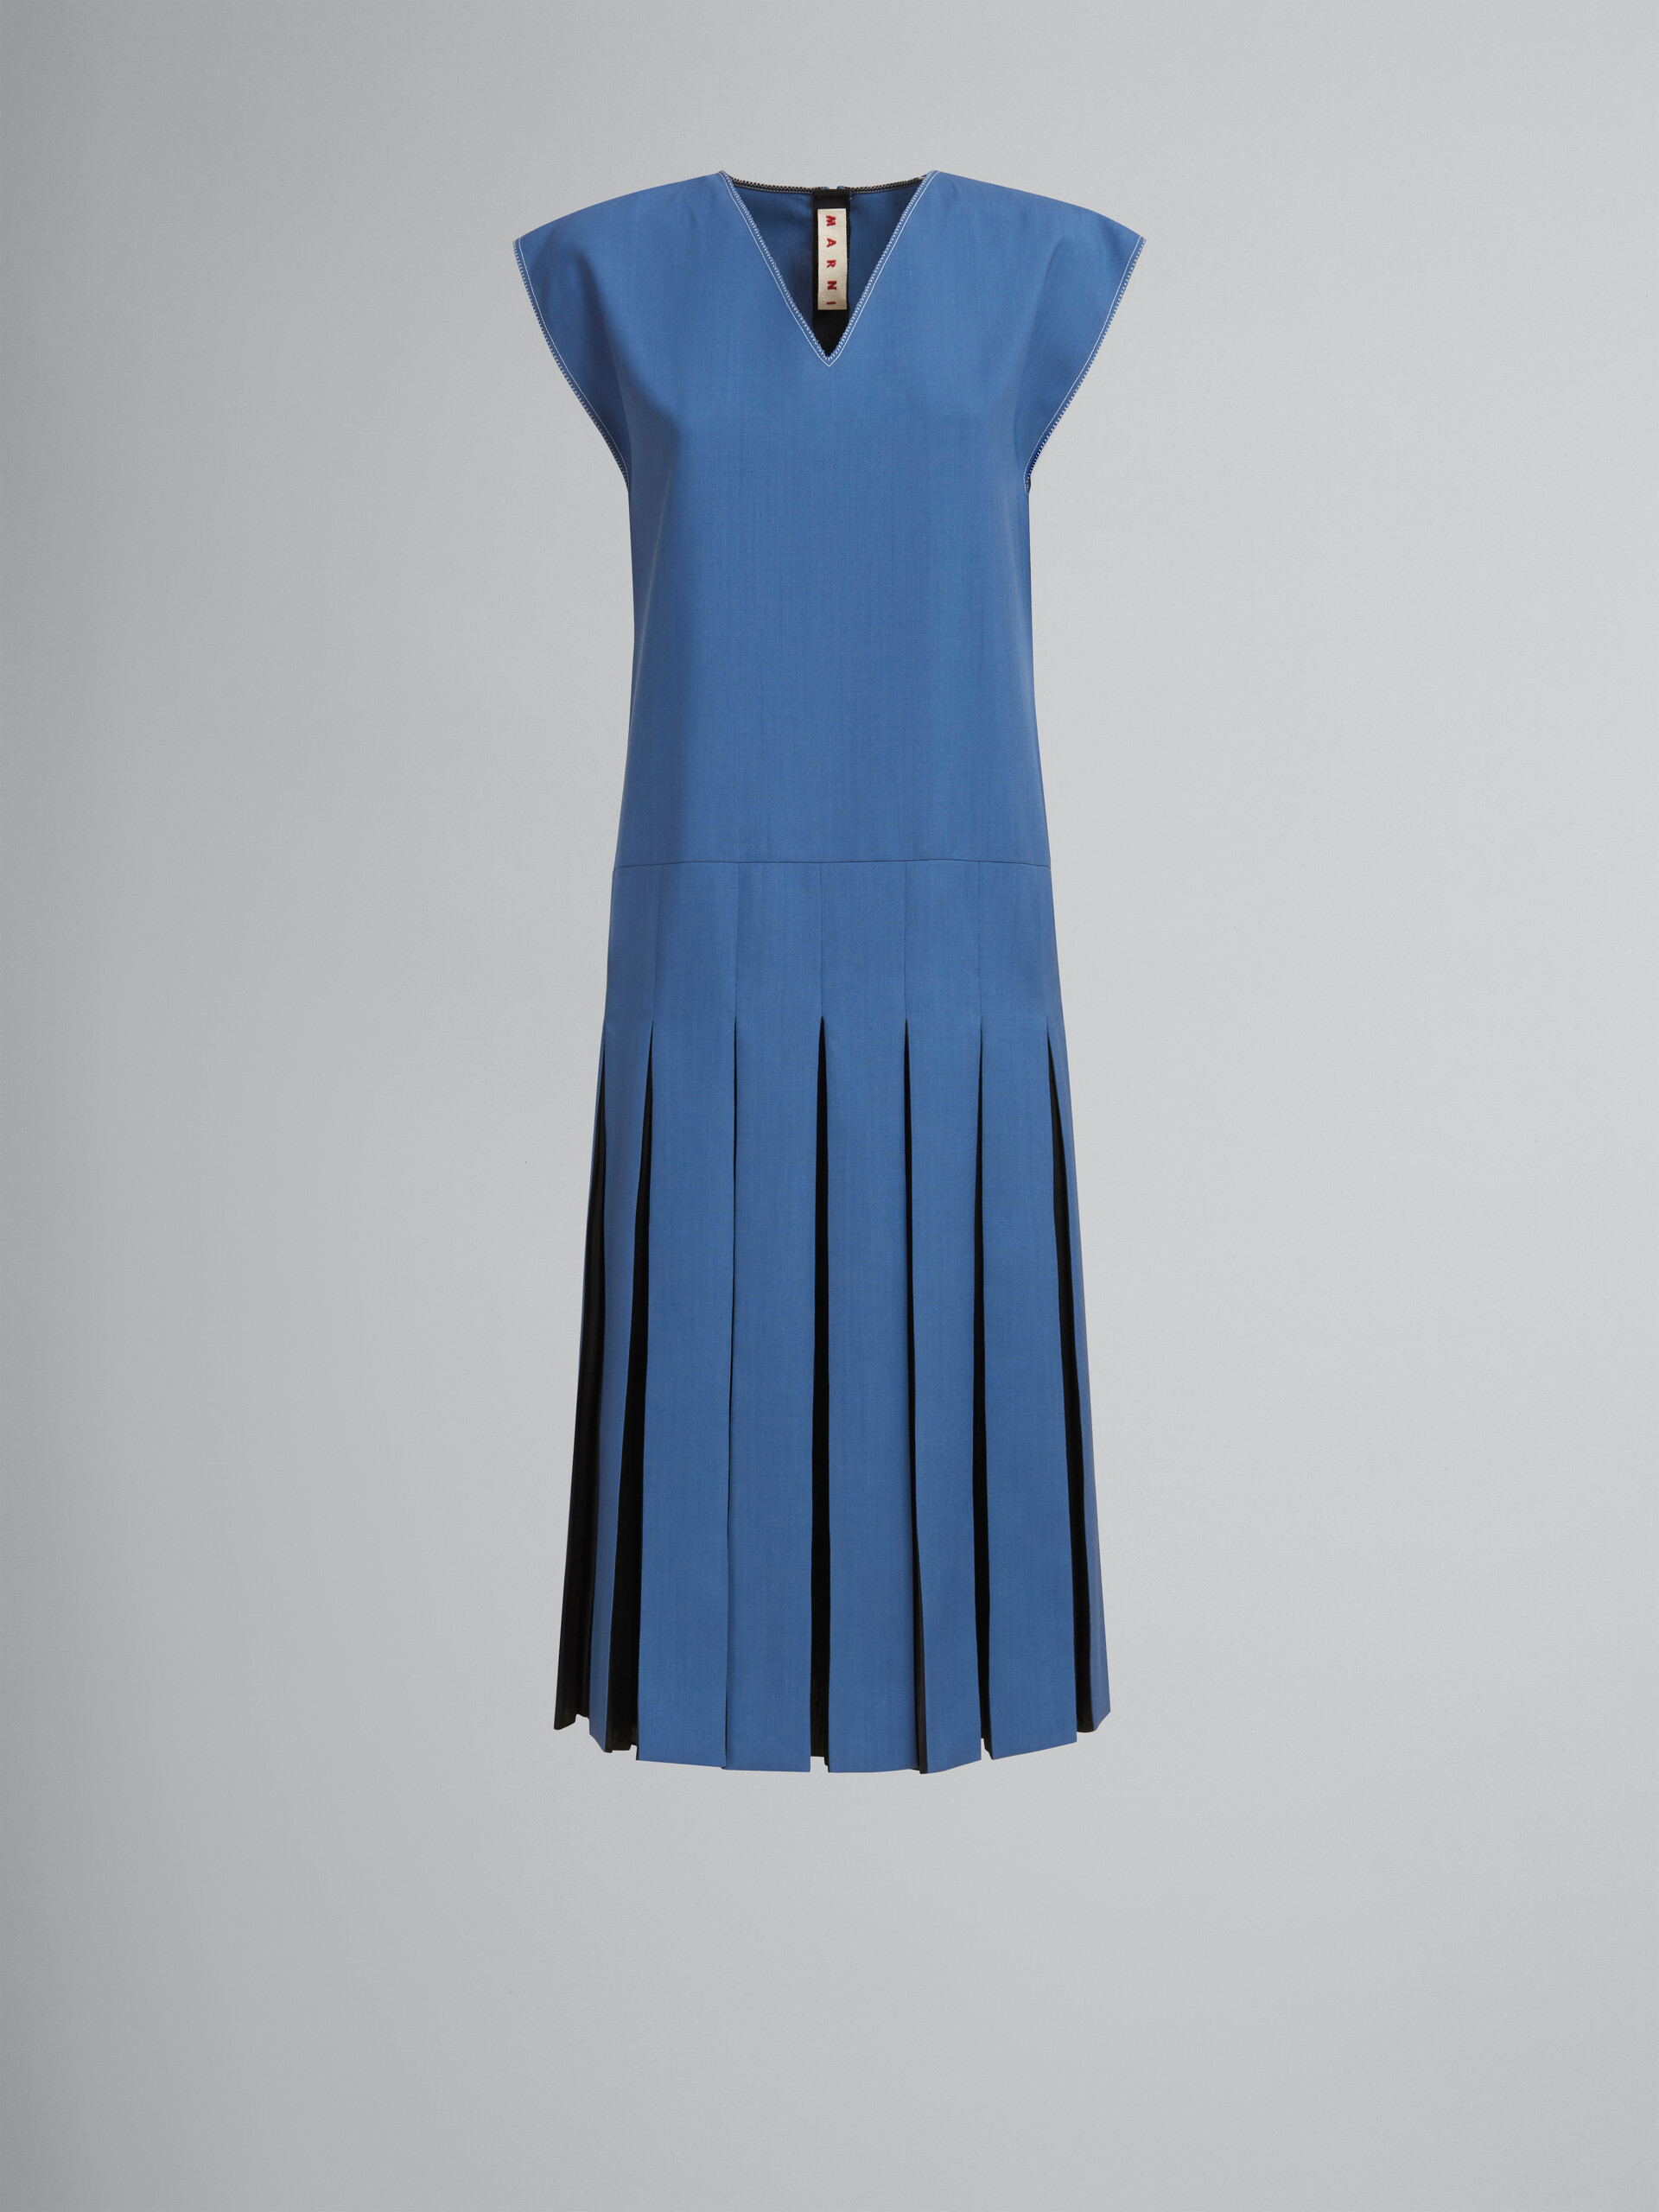 Blaues Kleid aus Tropenwolle mit kontrastierenden Falten - Kleider - Image 1